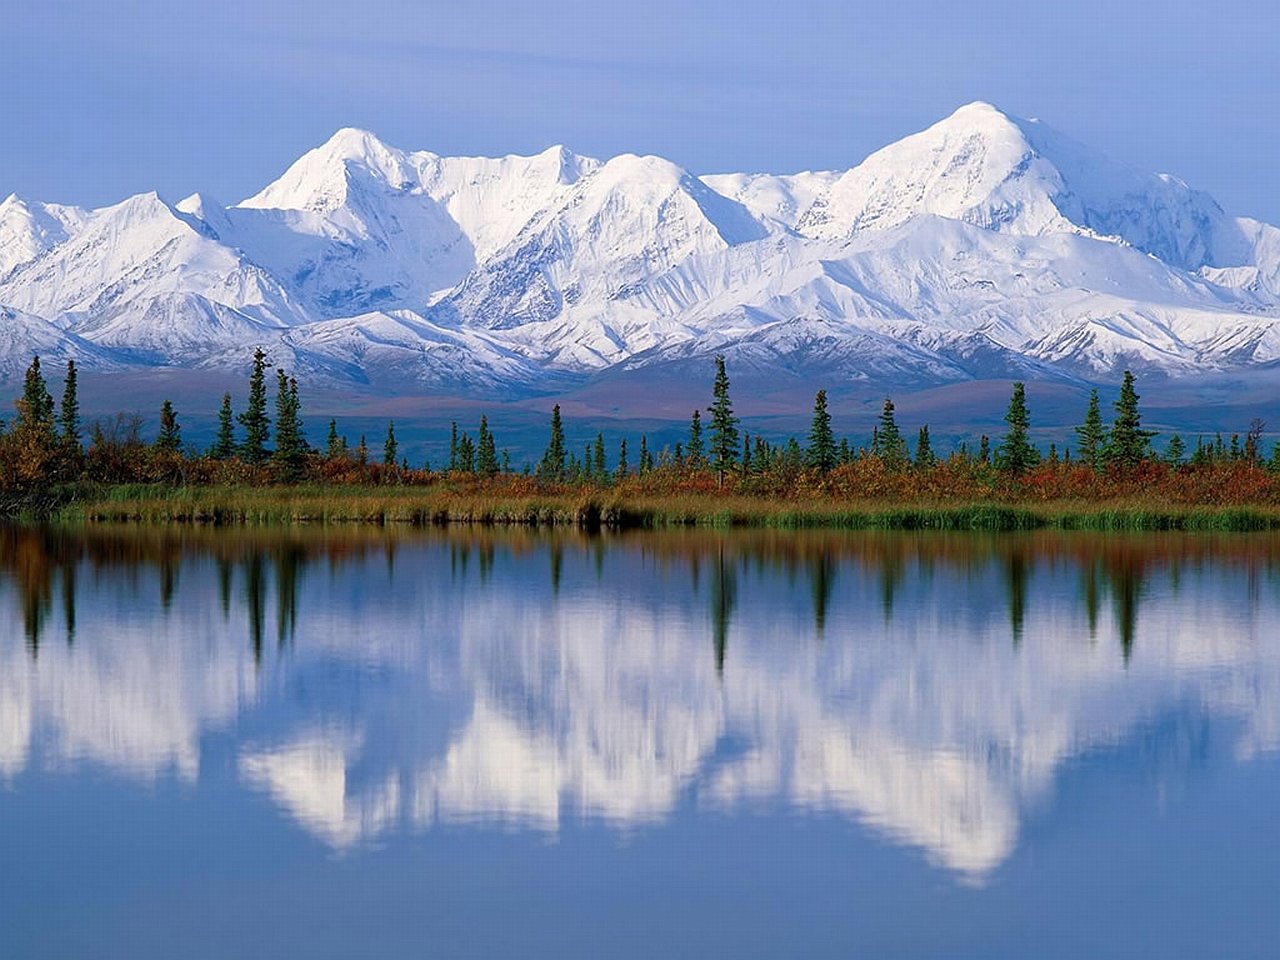 Северная америка больше россии. Национальный парк Денали Аляска. Северная Америка Аляска. Национальный парк Денали, штат Аляска. Кордильеры Аляски.